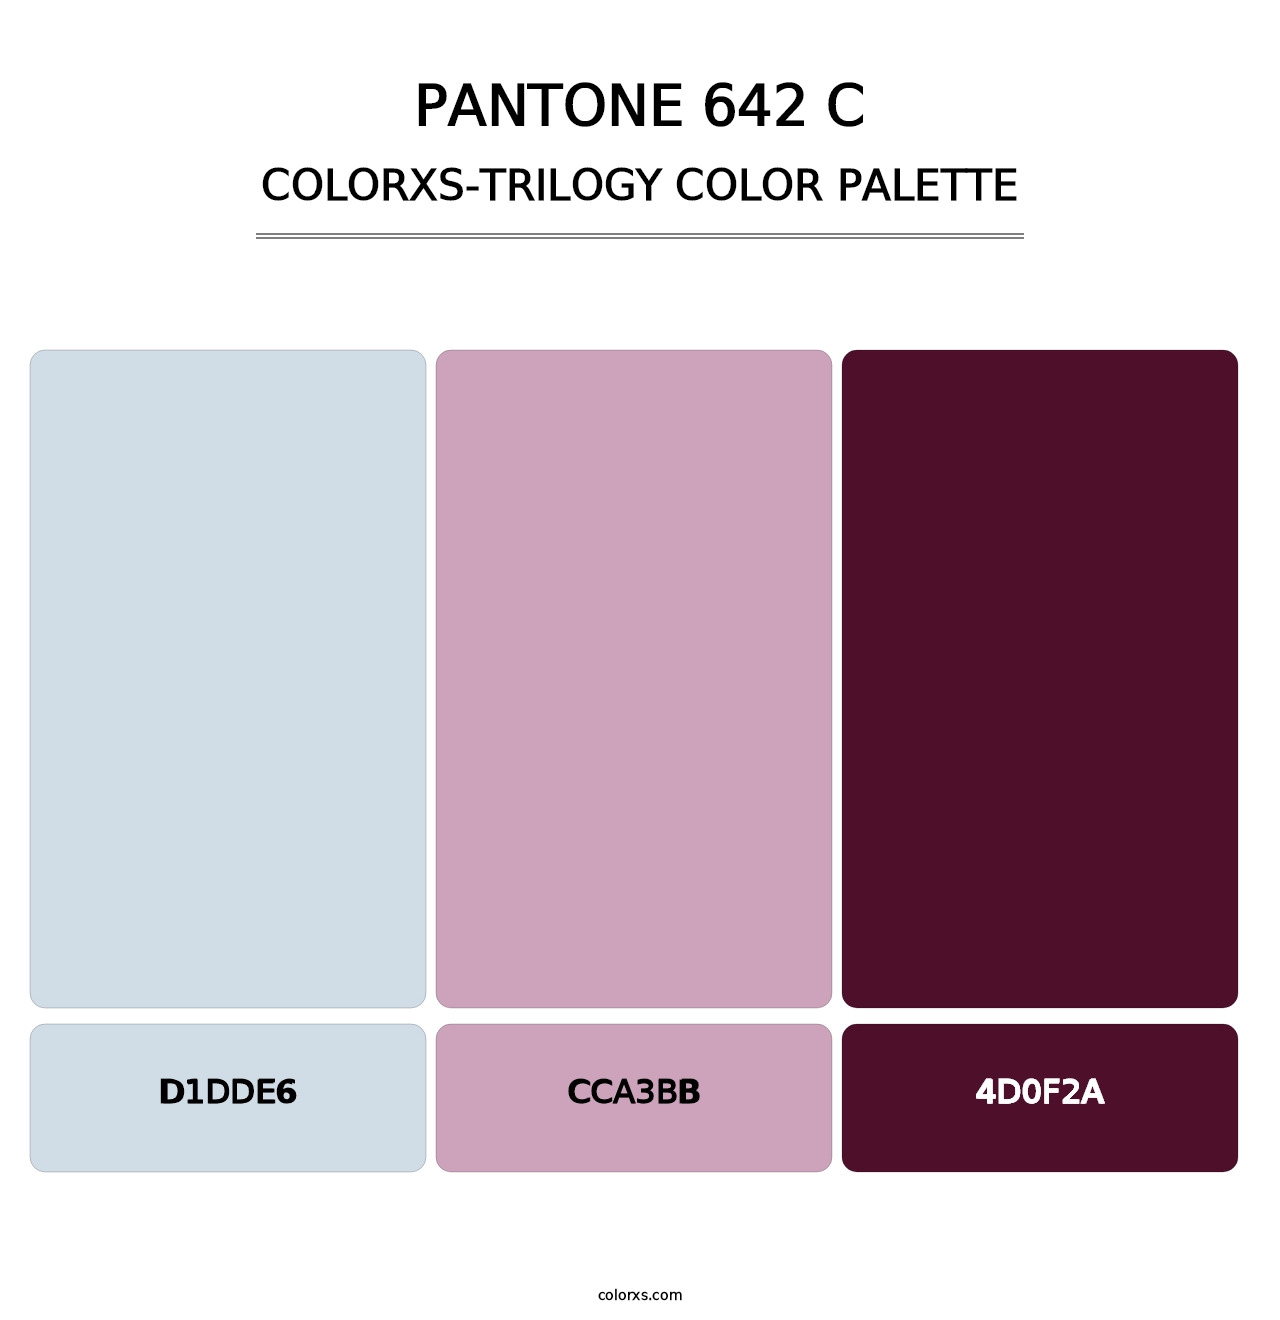 PANTONE 642 C - Colorxs Trilogy Palette